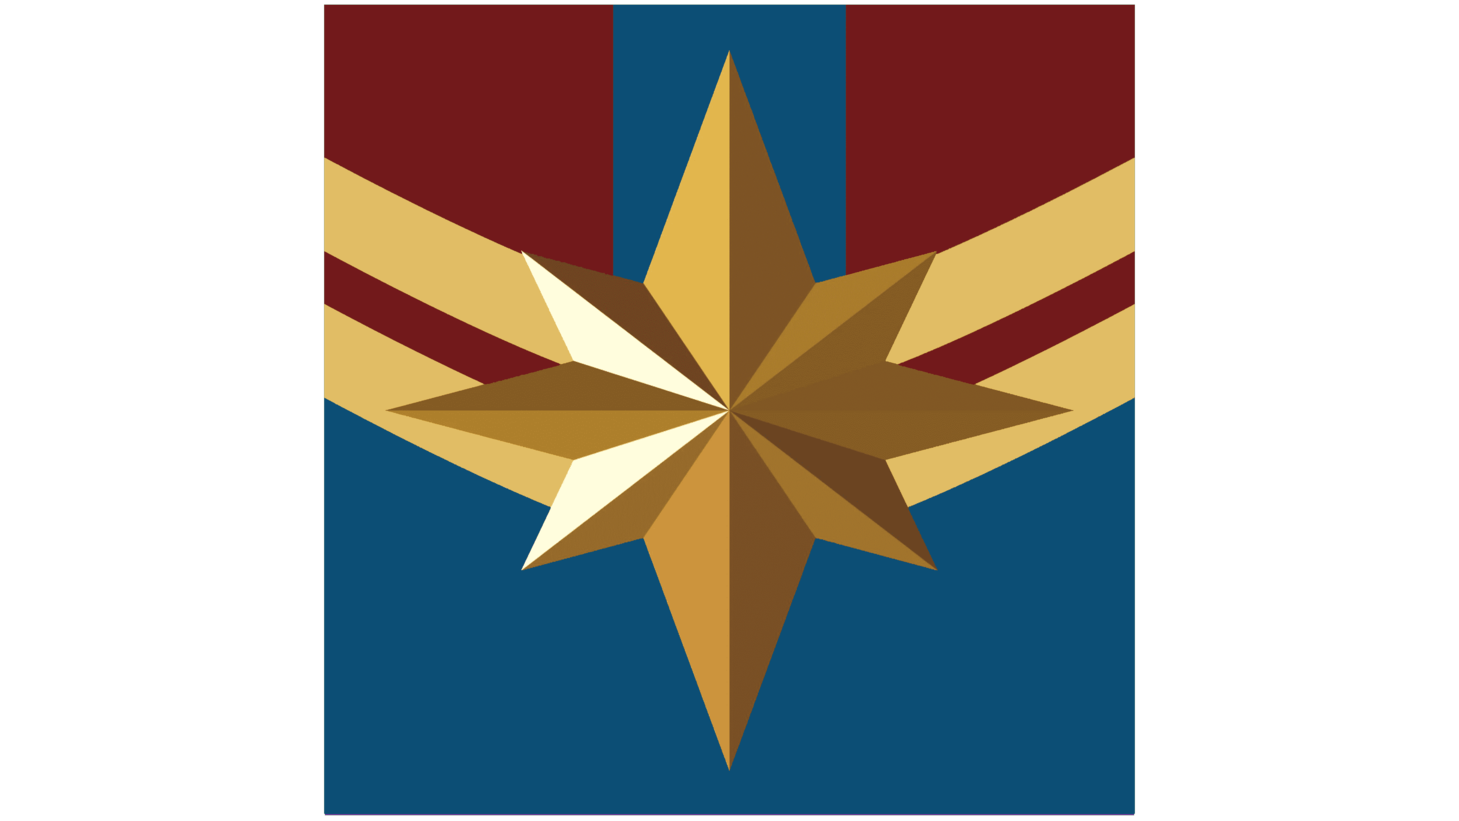 Captain marvel logo